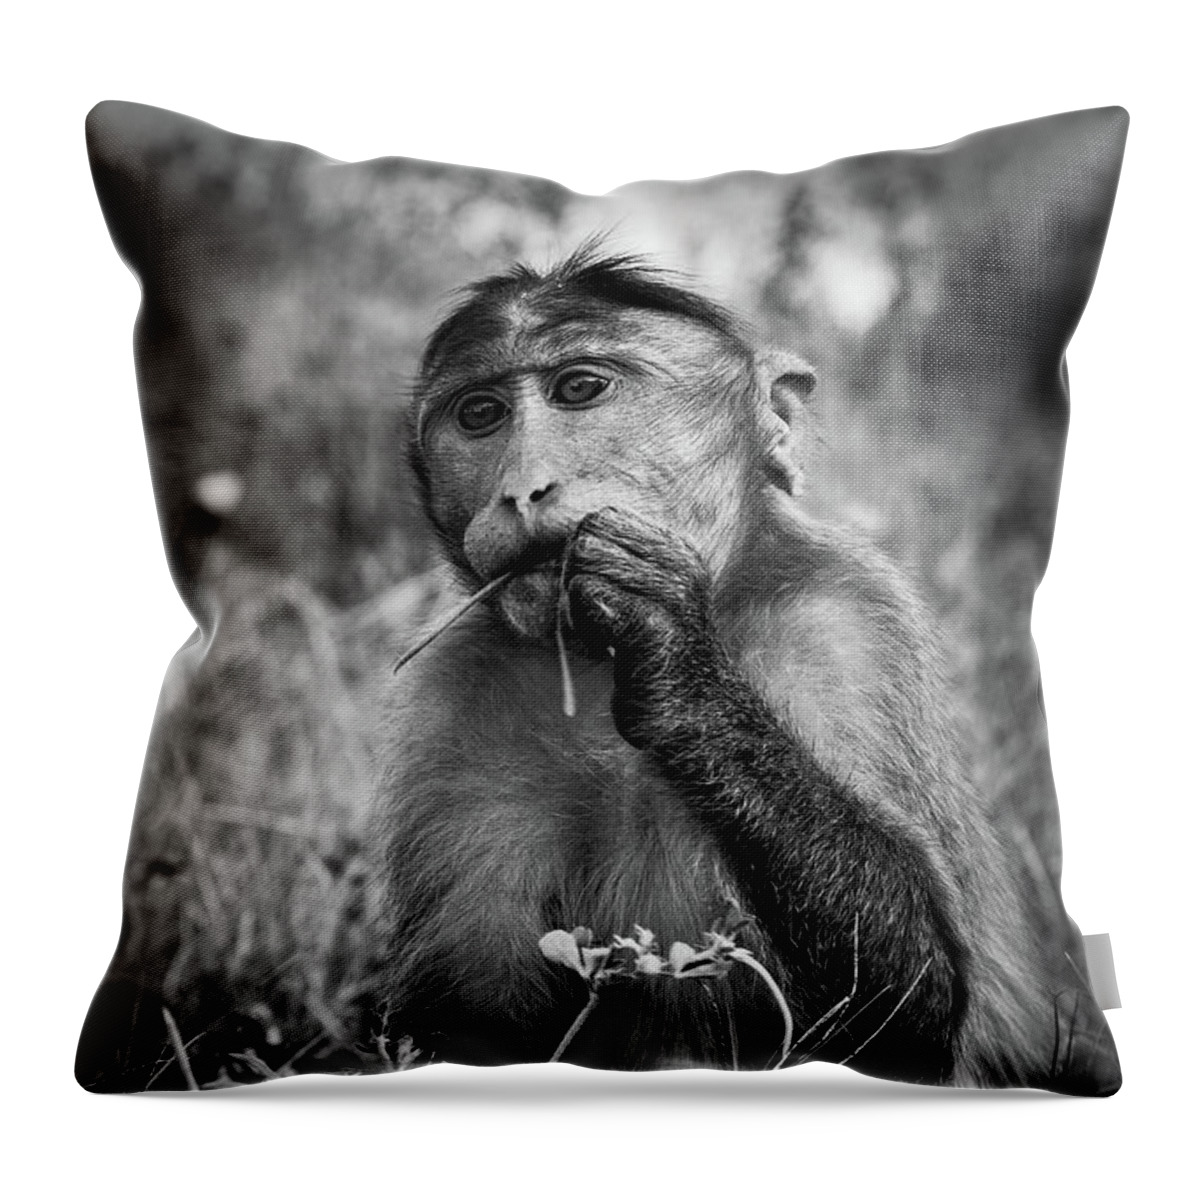 Macaque Throw Pillow featuring the photograph Macaque by Josu Ozkaritz